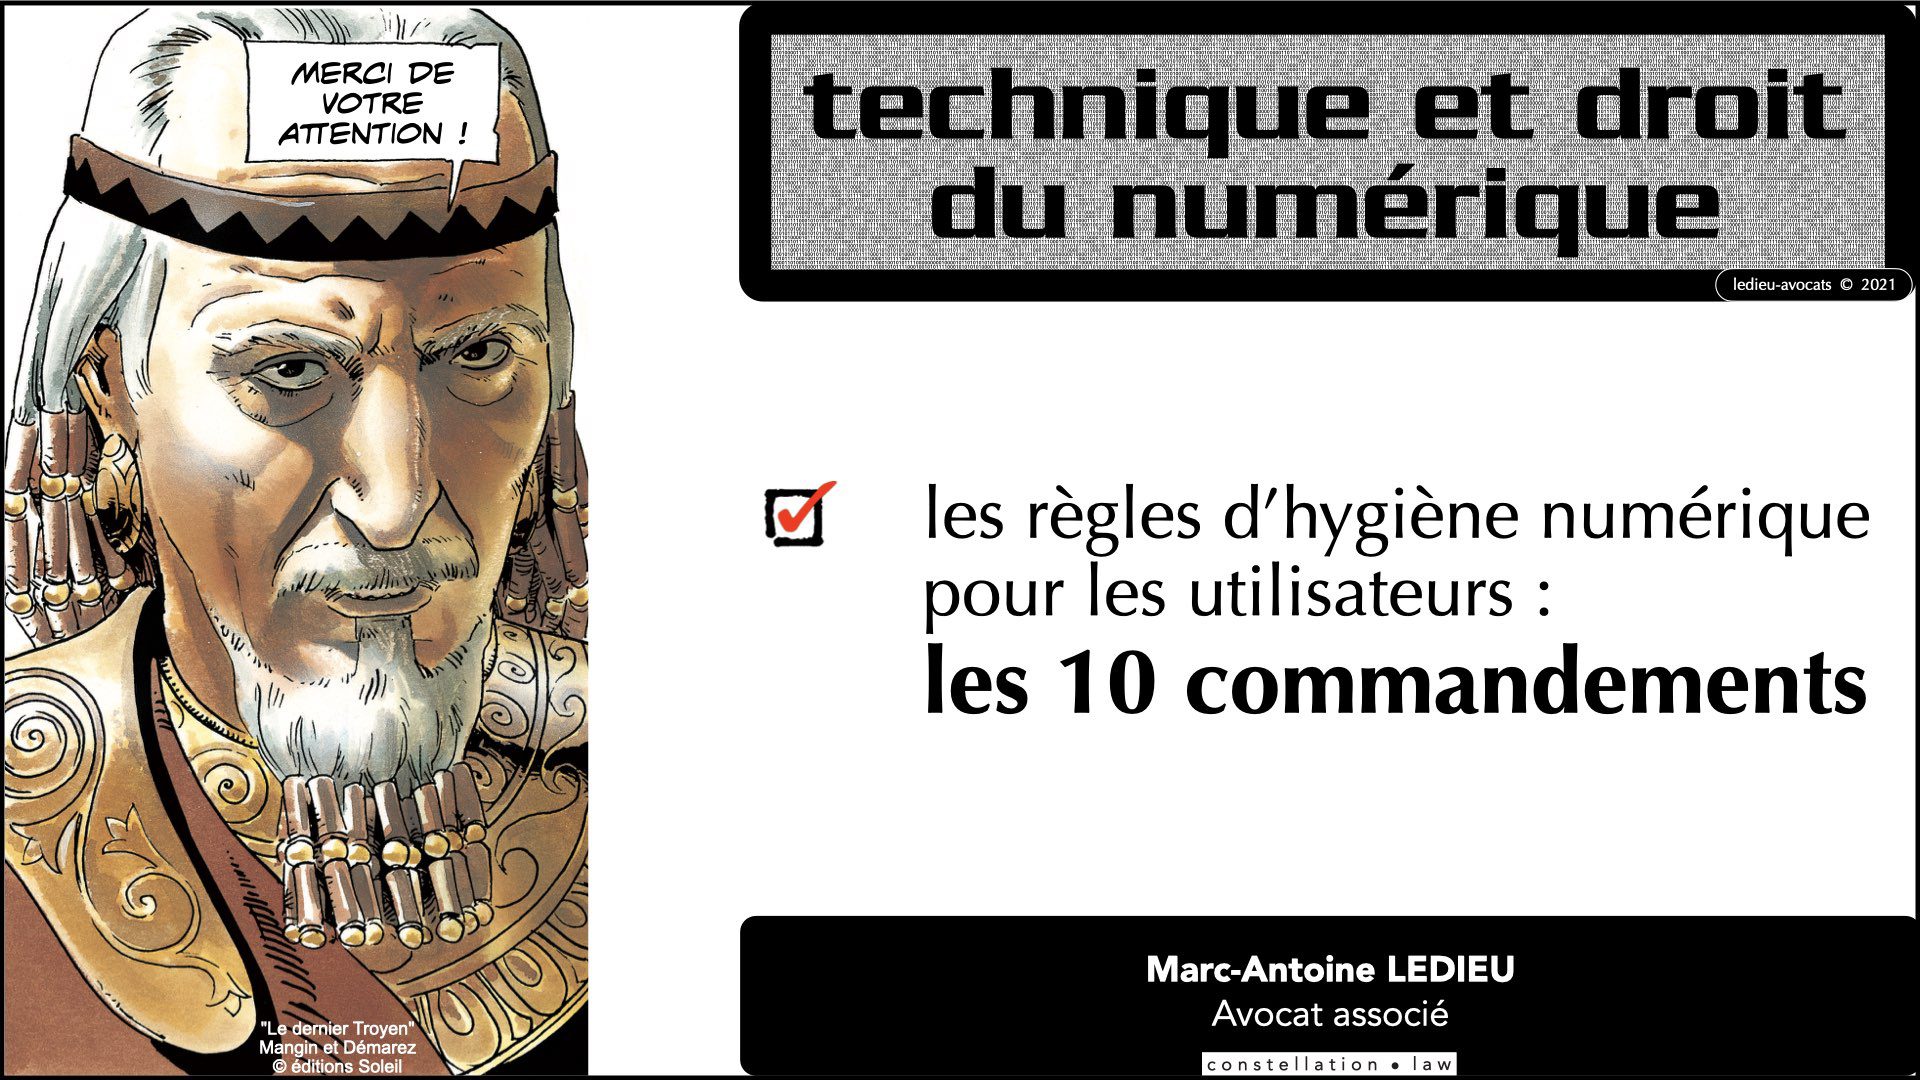 345 10 commandements hygiène numérique © Ledieu-Avocats technique droit numérique 07-09-2021.030